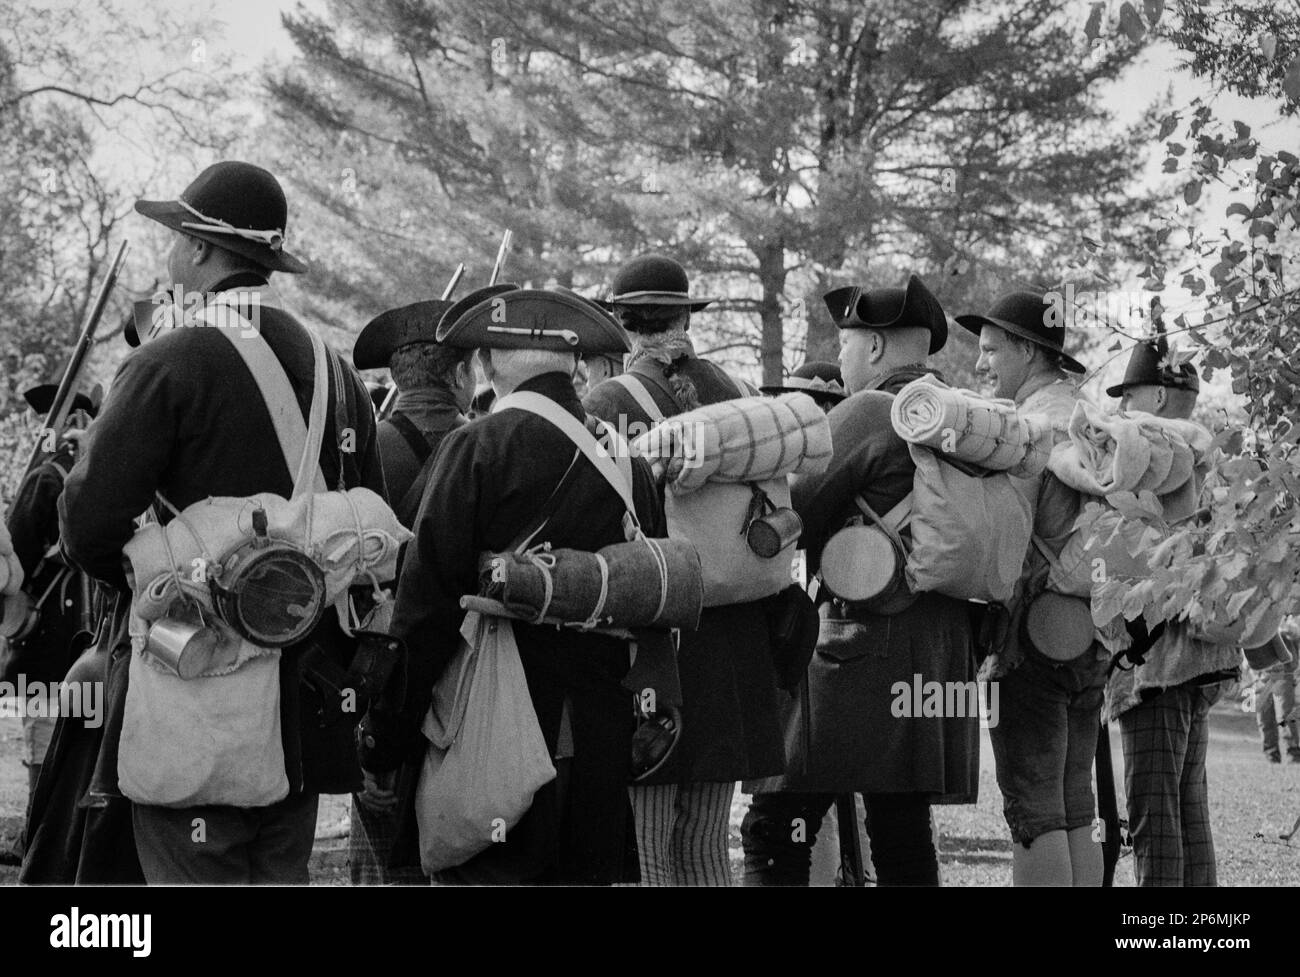 Schauspieler/Soldaten in Kolonialuniformen stehen in Formation mit Rudeln auf dem Rücken und Musketen in der Hand während einer Nachstellung des Revolutionskrieges im Re Stockfoto